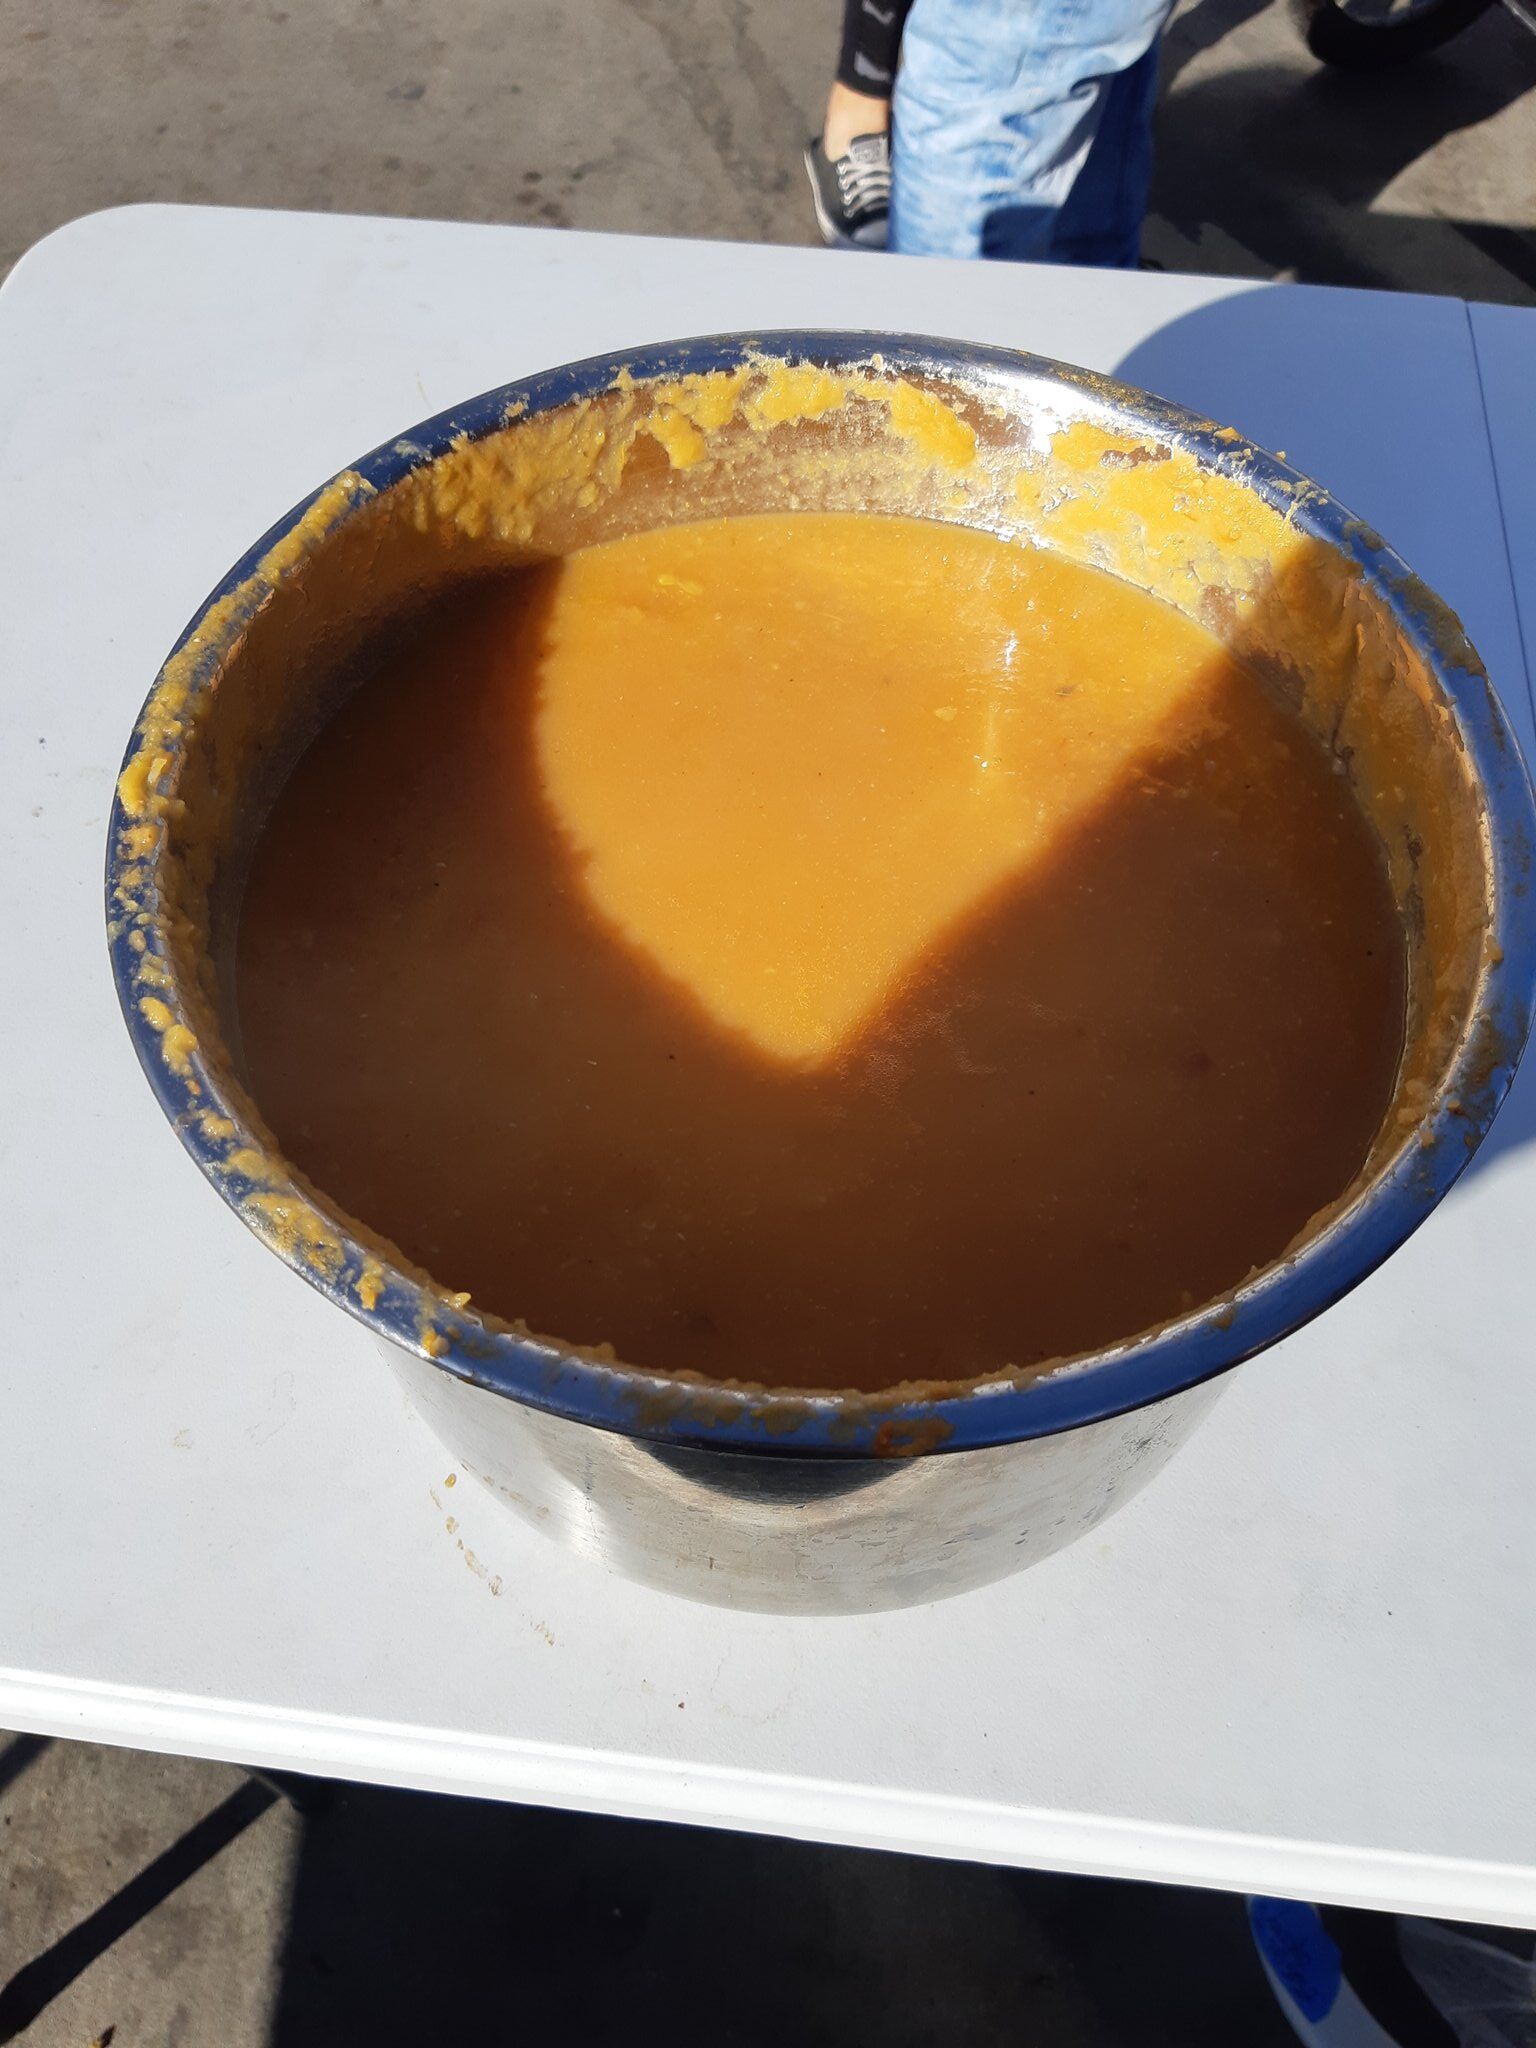 A large serving bowl of pumpkin soup.